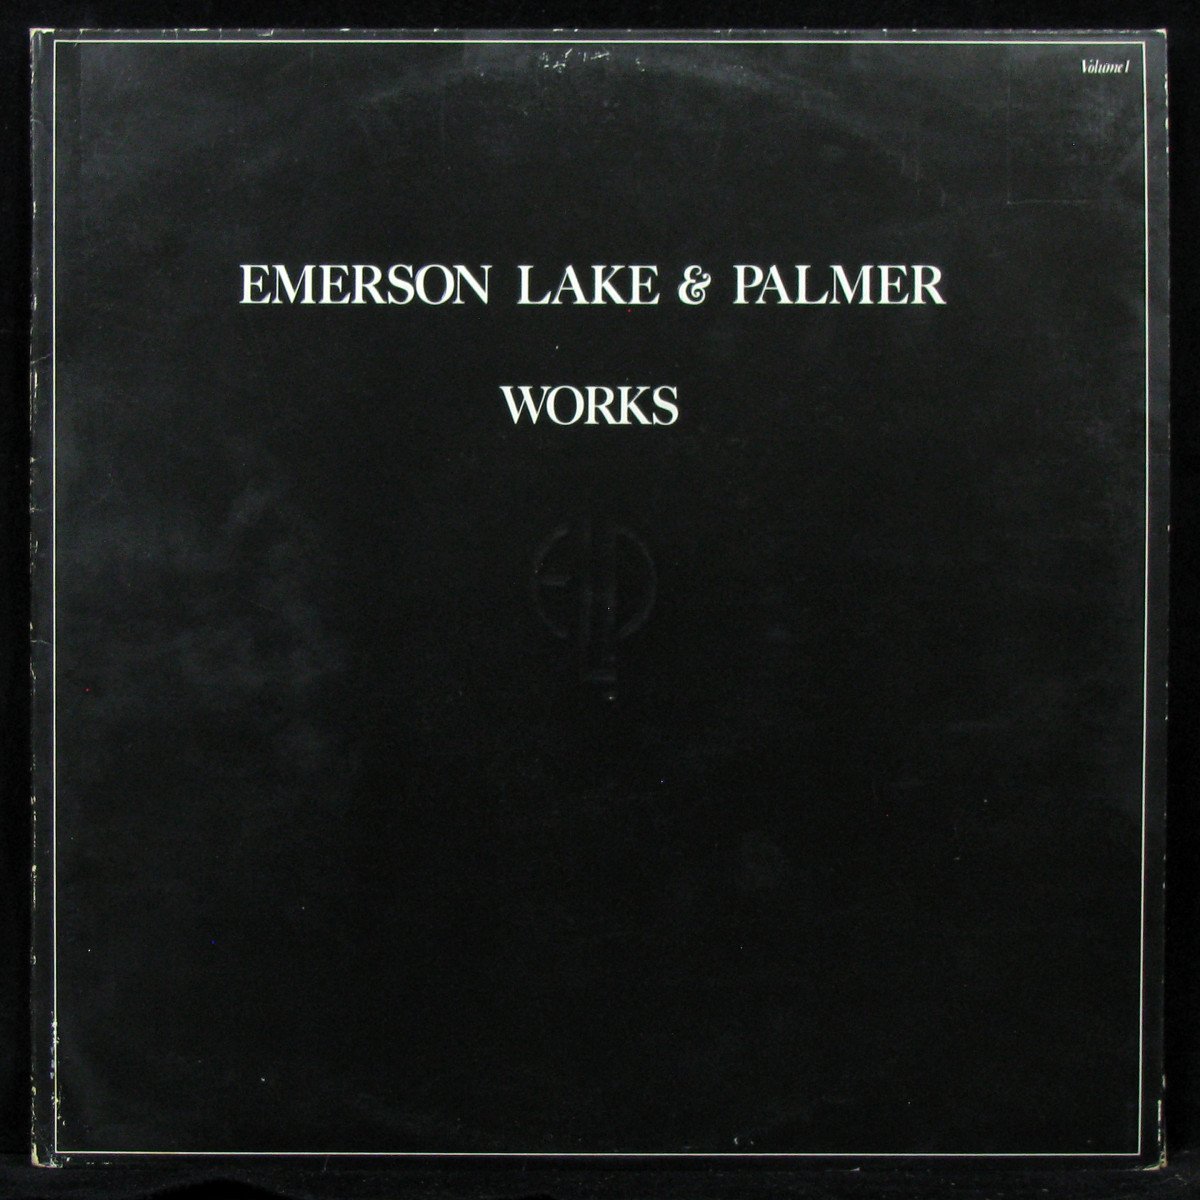 LP Emerson Lake & Palmer — Works (Volume 1) (2LP) фото